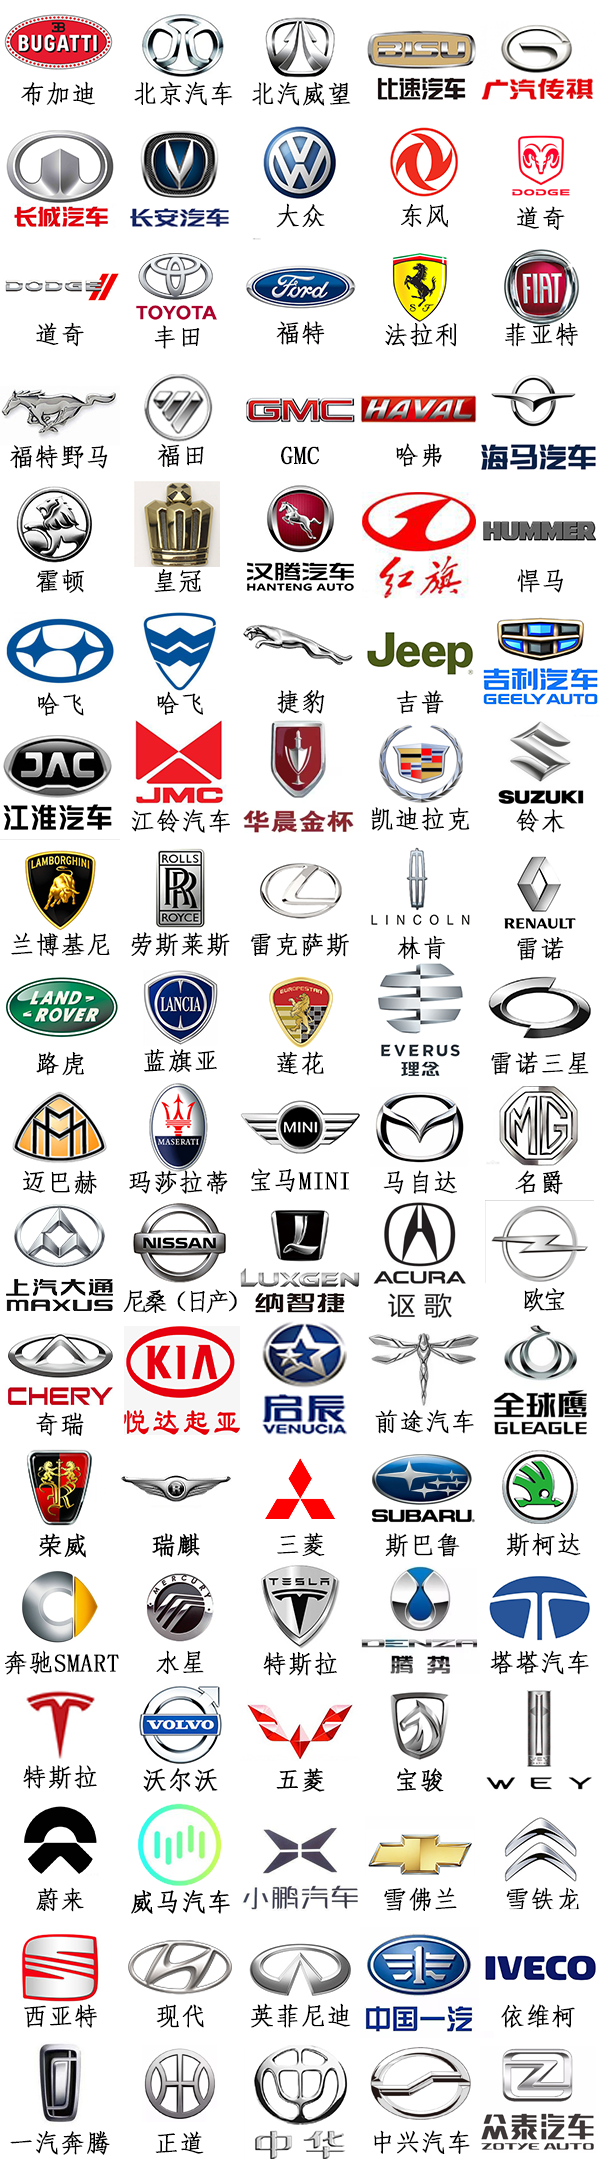 高档汽车品牌商标